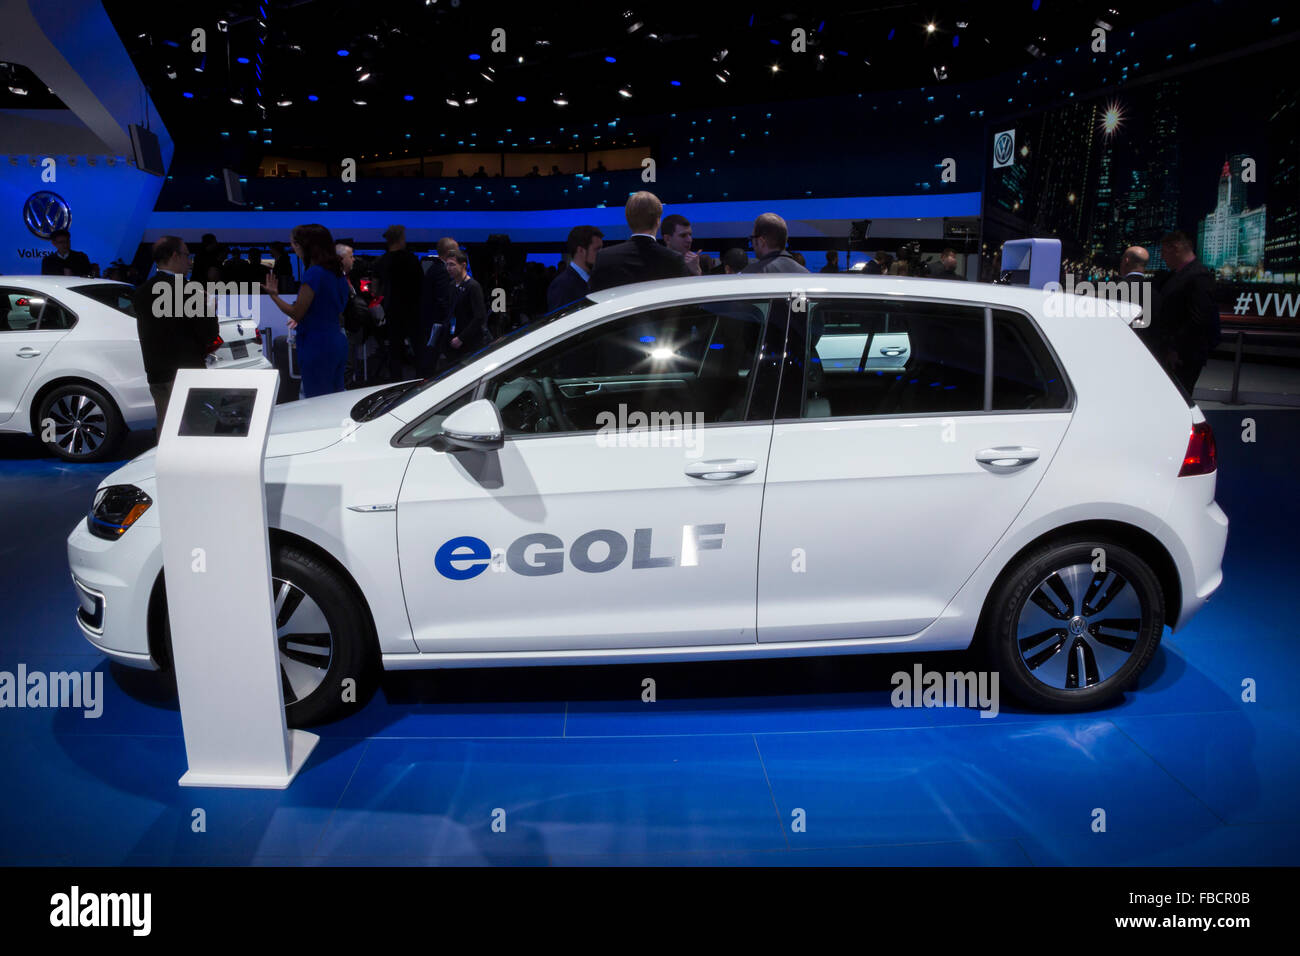 Detroit, Michigan - El Volkswagen e-GOLF coche eléctrico en exhibición en el North American International Auto Show. Foto de stock